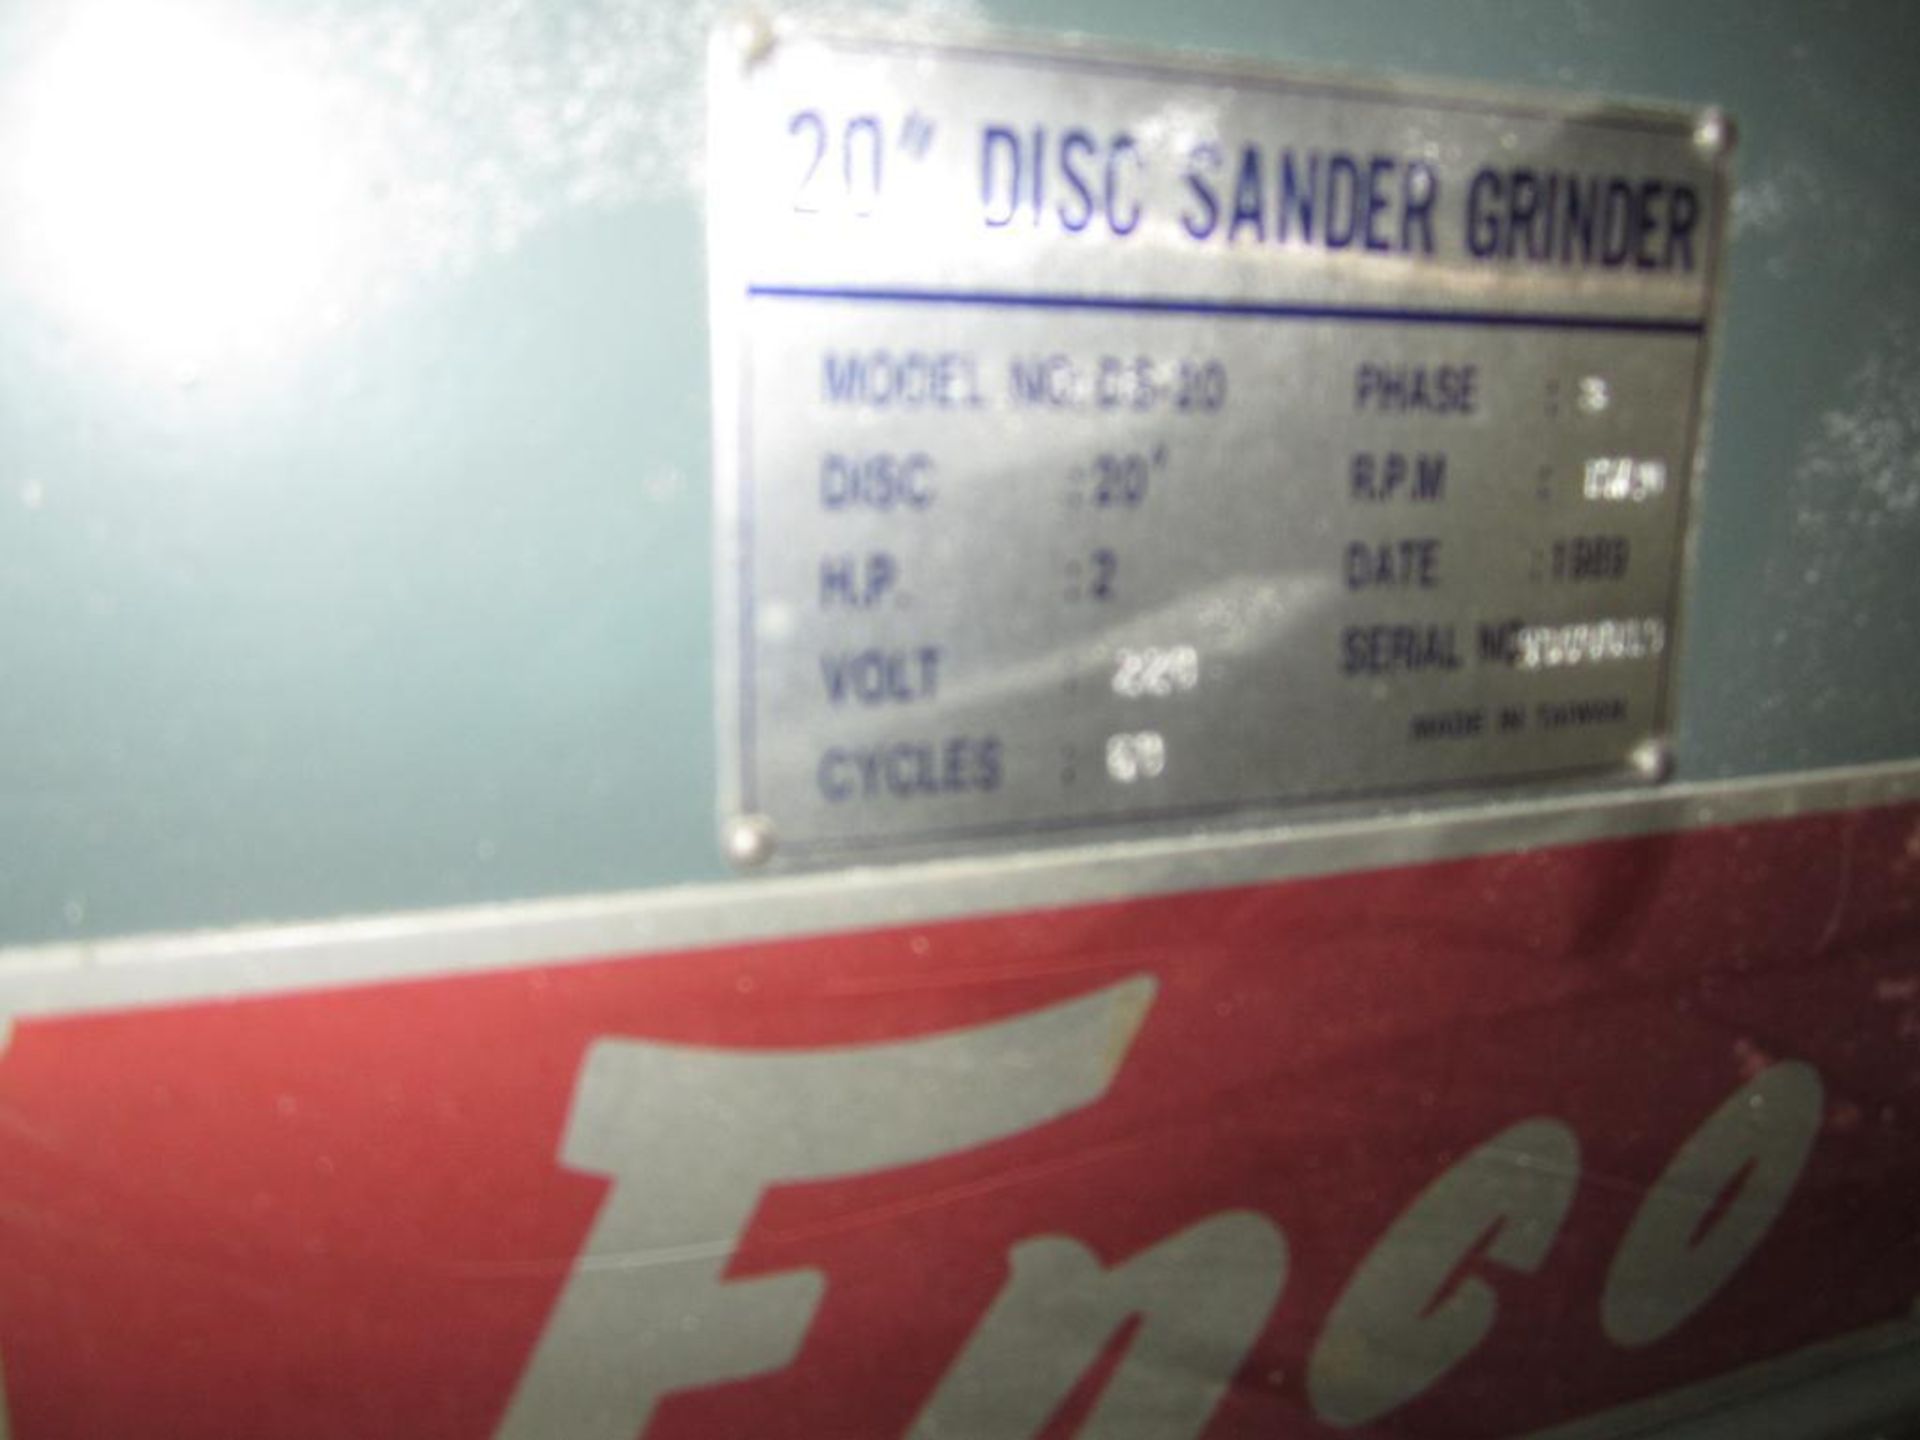 Enco 20" disc sander - Image 4 of 6